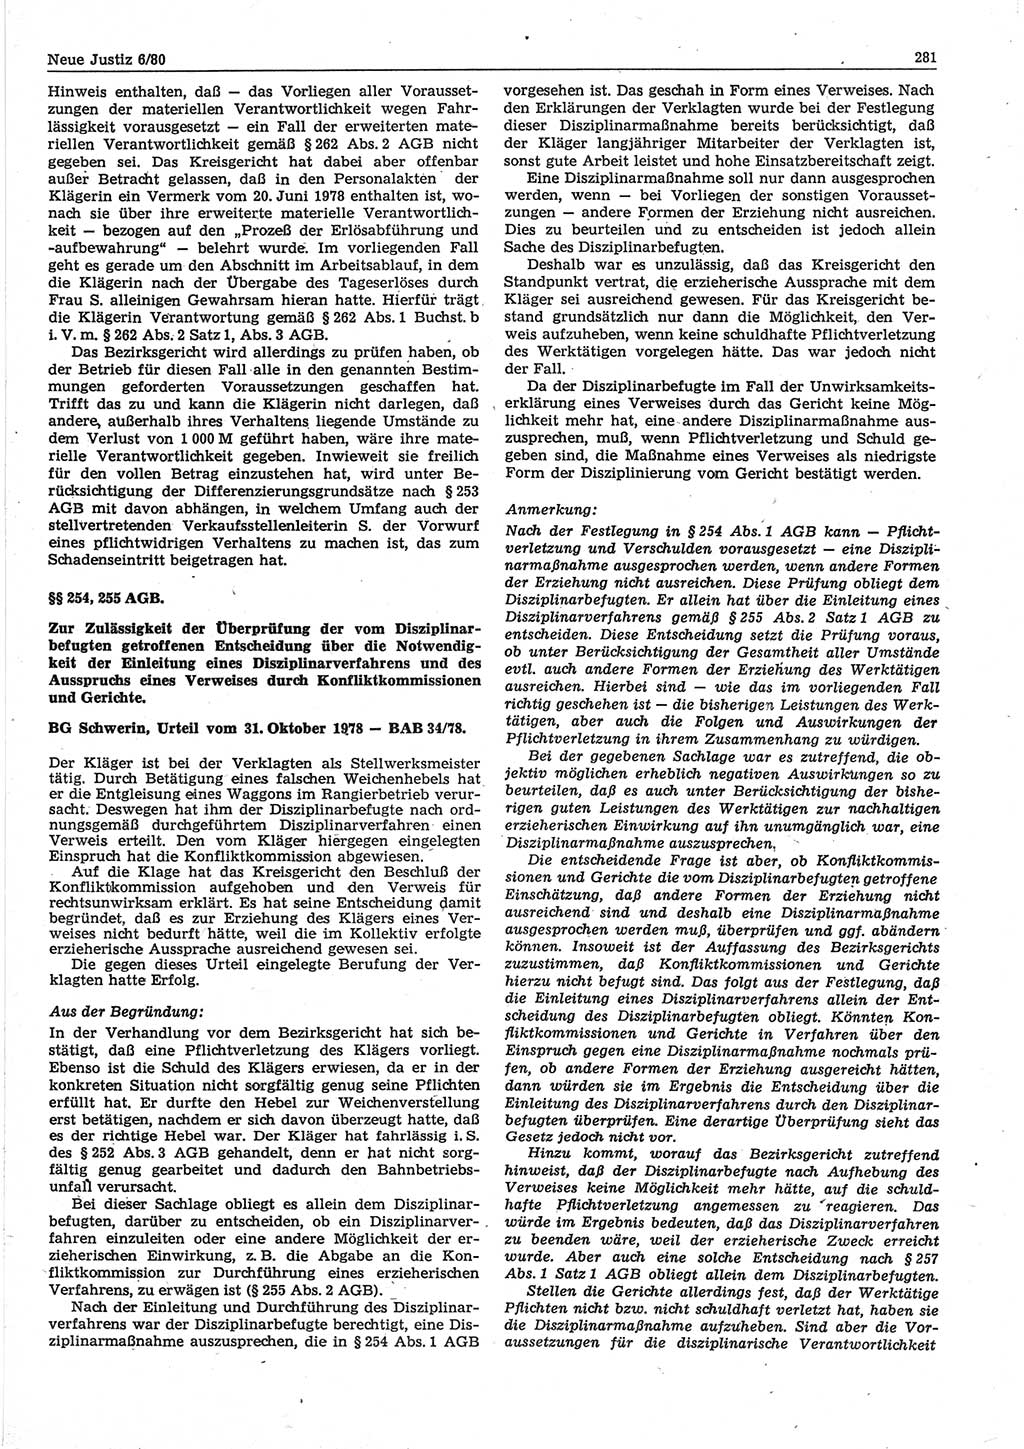 Neue Justiz (NJ), Zeitschrift für sozialistisches Recht und Gesetzlichkeit [Deutsche Demokratische Republik (DDR)], 34. Jahrgang 1980, Seite 281 (NJ DDR 1980, S. 281)